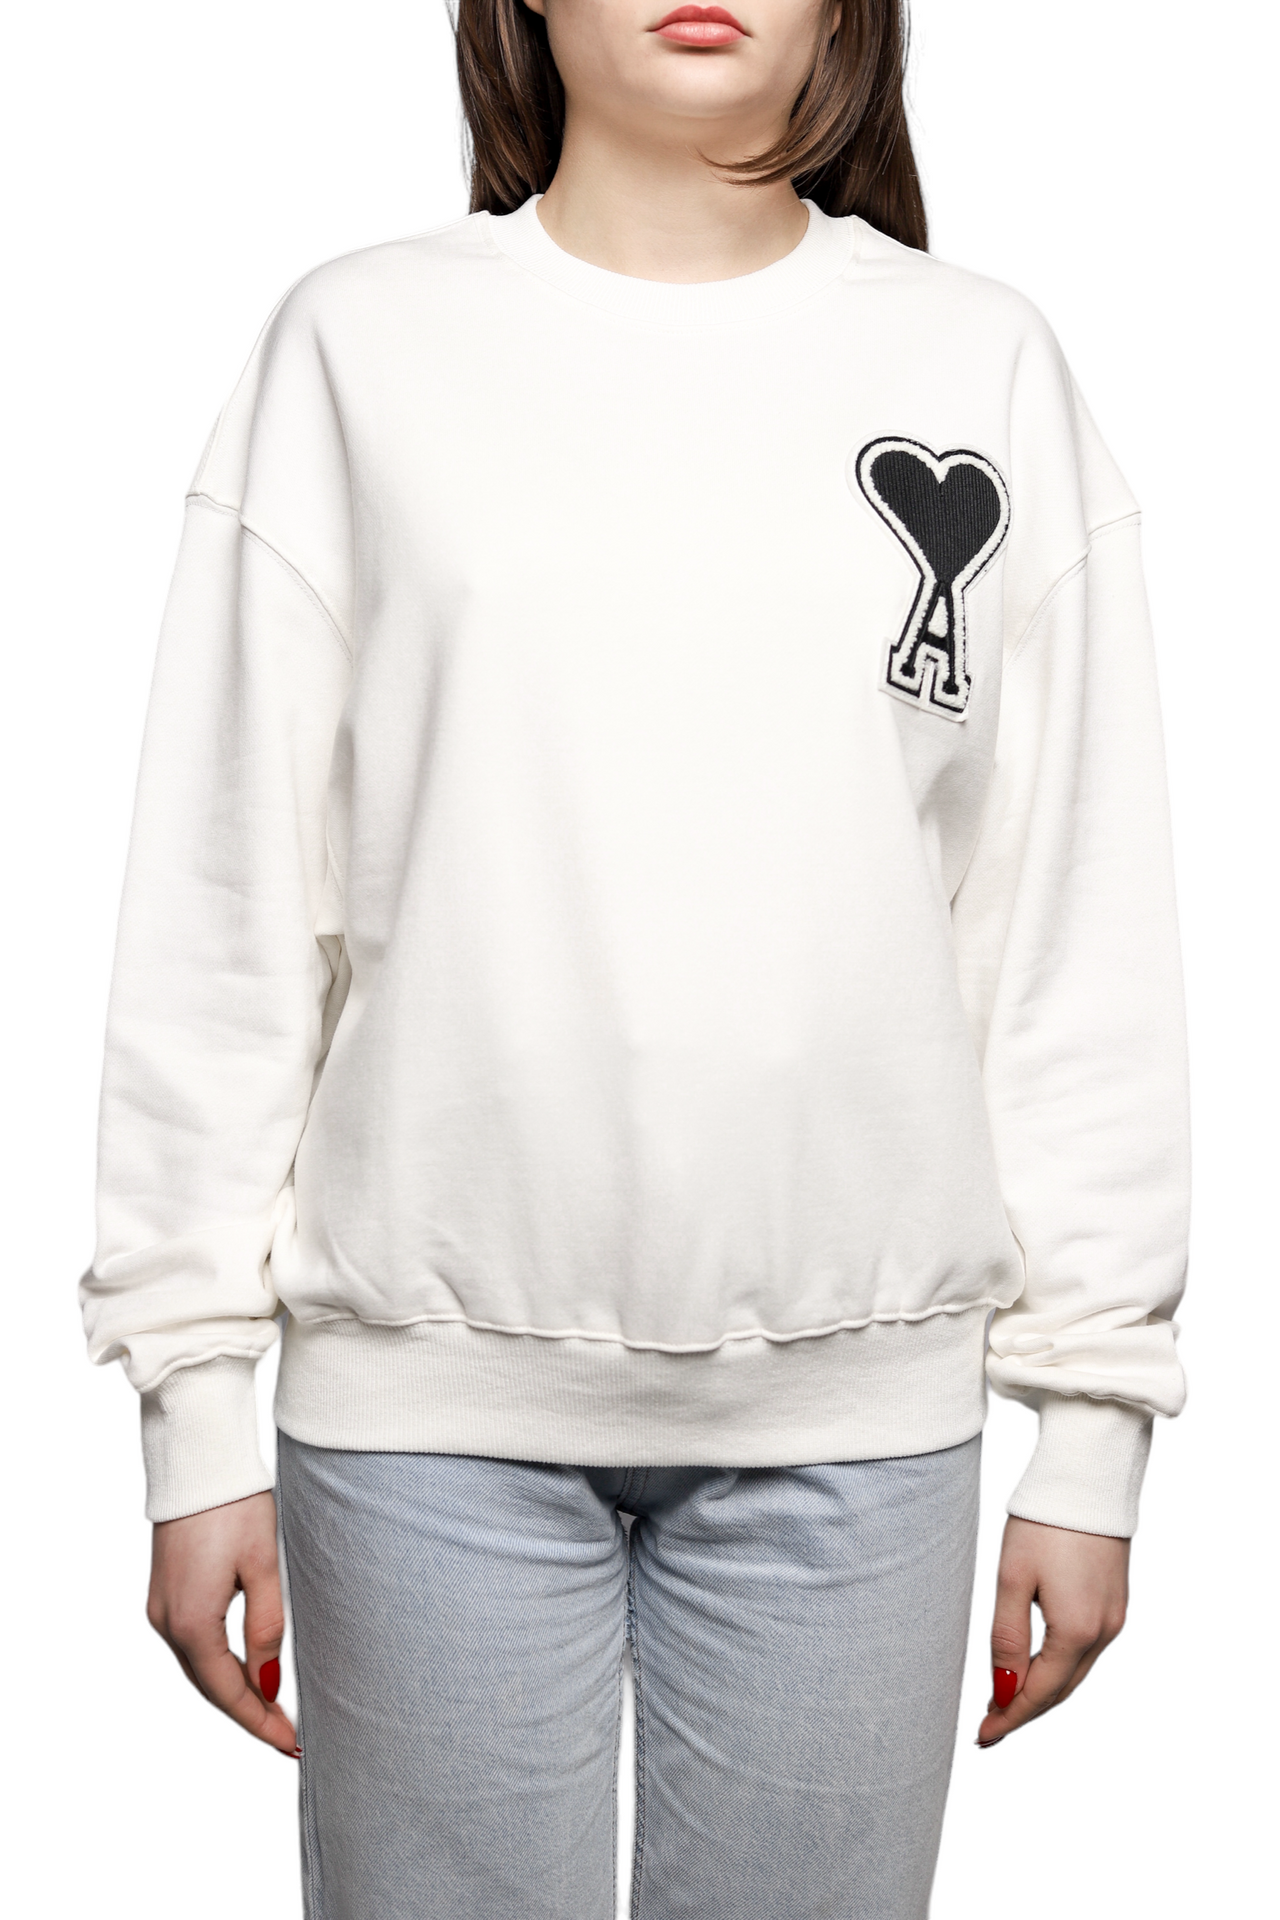 AMI Paris oversize Ami de Coeur patch sweatshirt White/Black